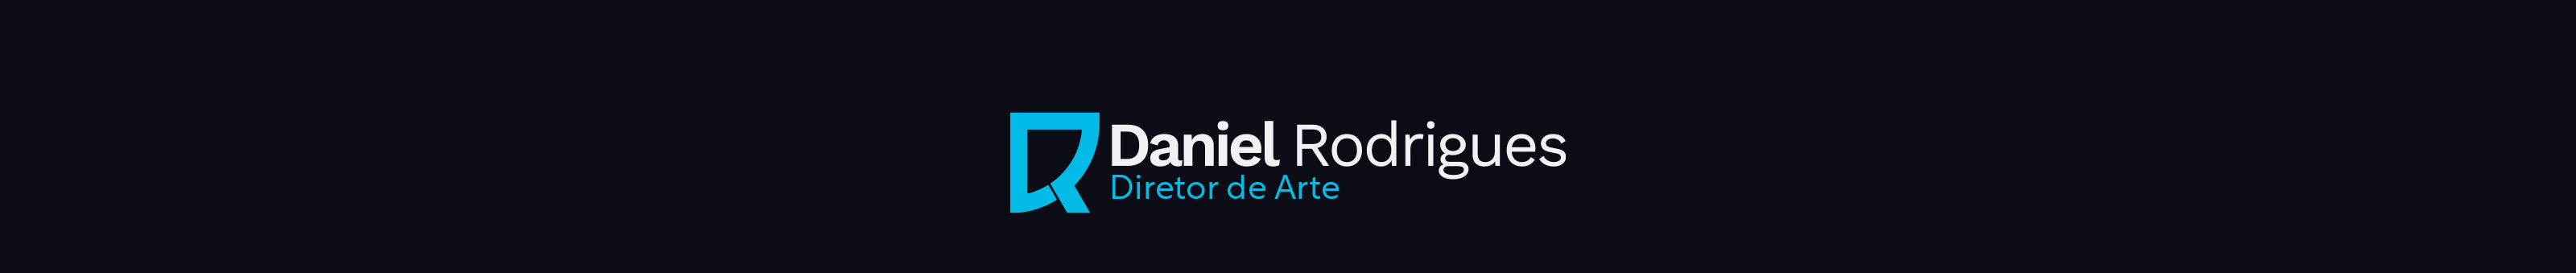 Daniel Rodrigues ✪'s profile banner